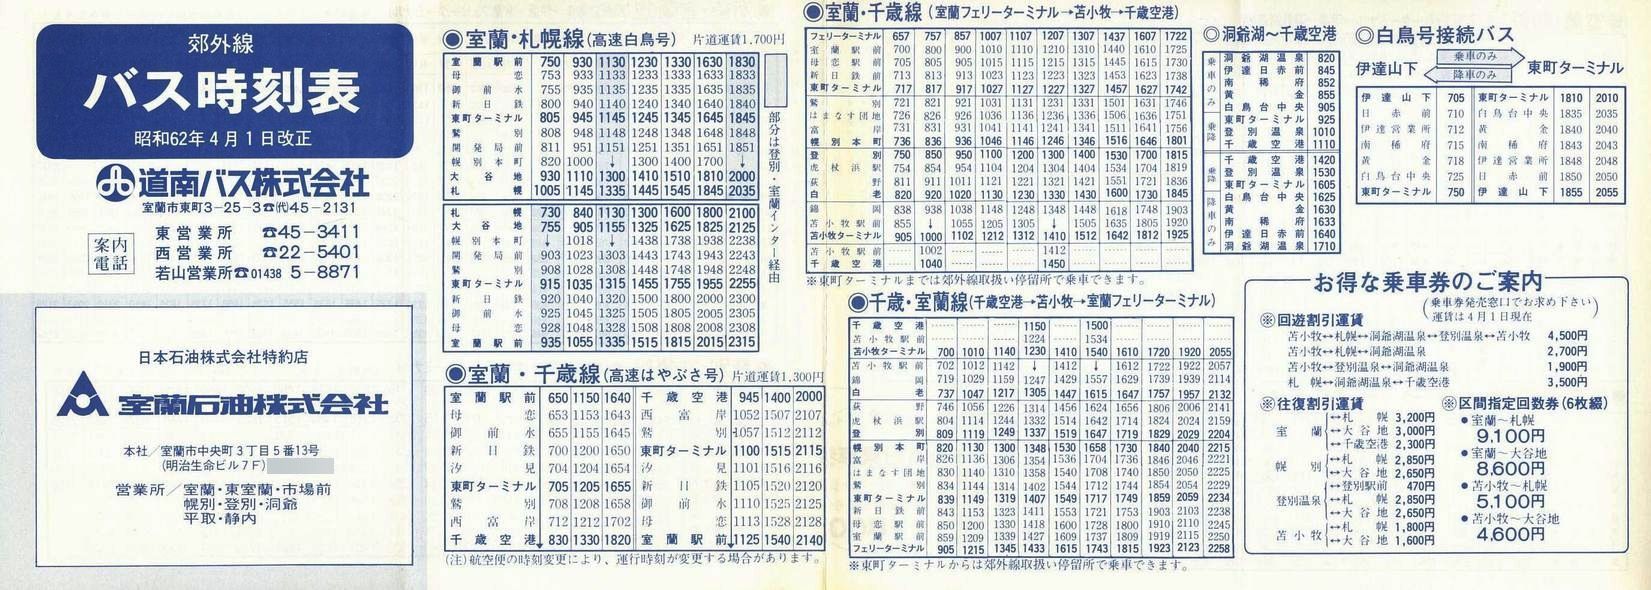 1987-04-01_oX_ōxO\\